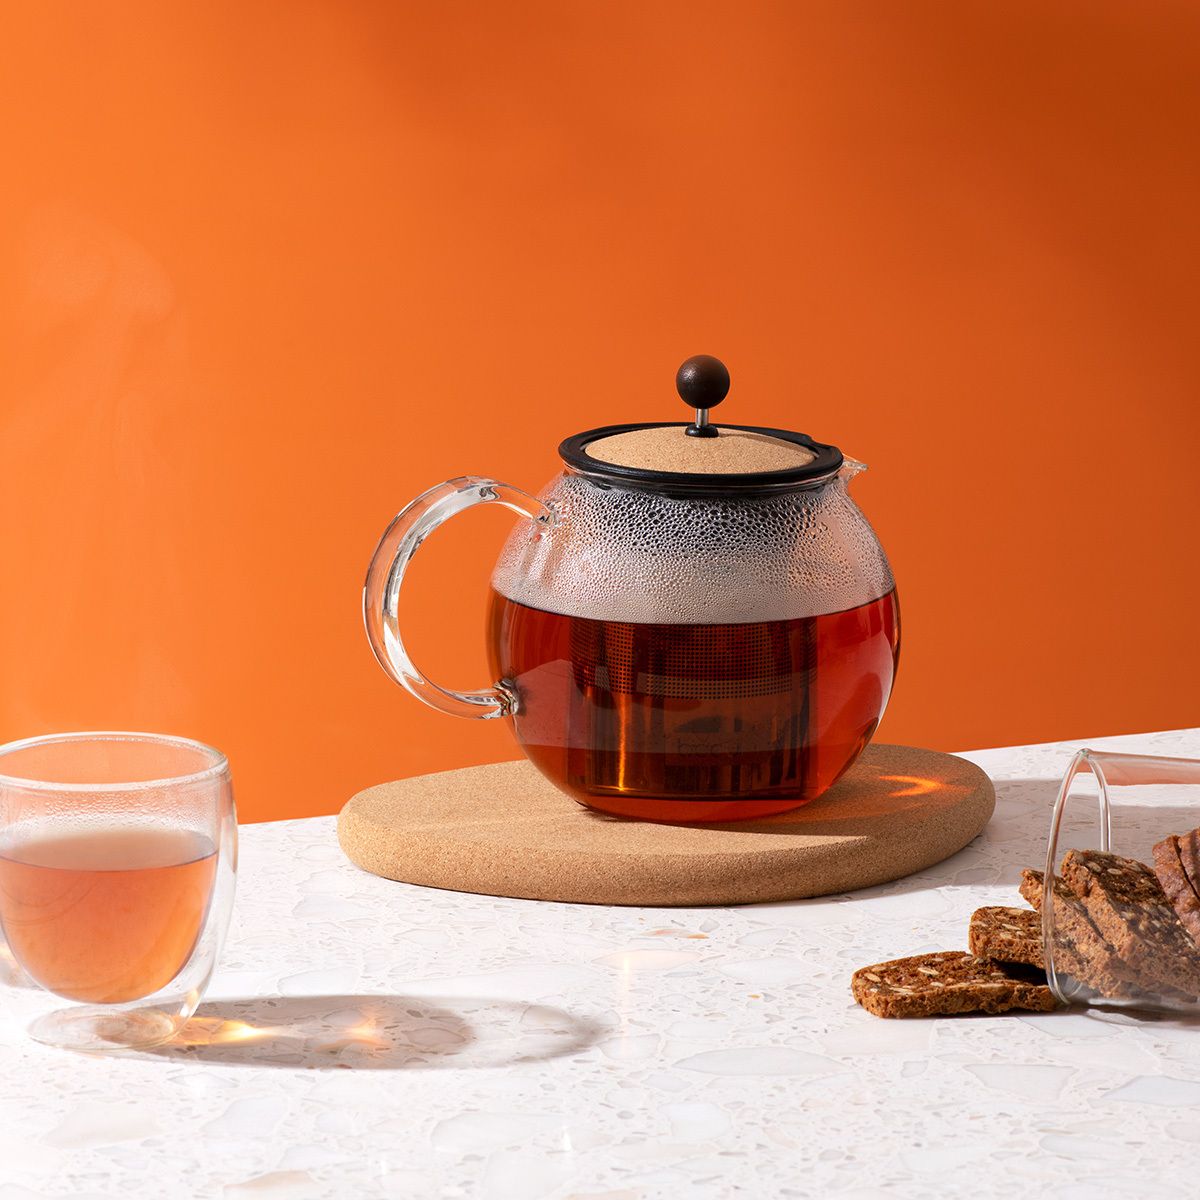 Bodum ASSAM Teapot, Glass Teapot with Stainless Steel Filter, 34 Ounce